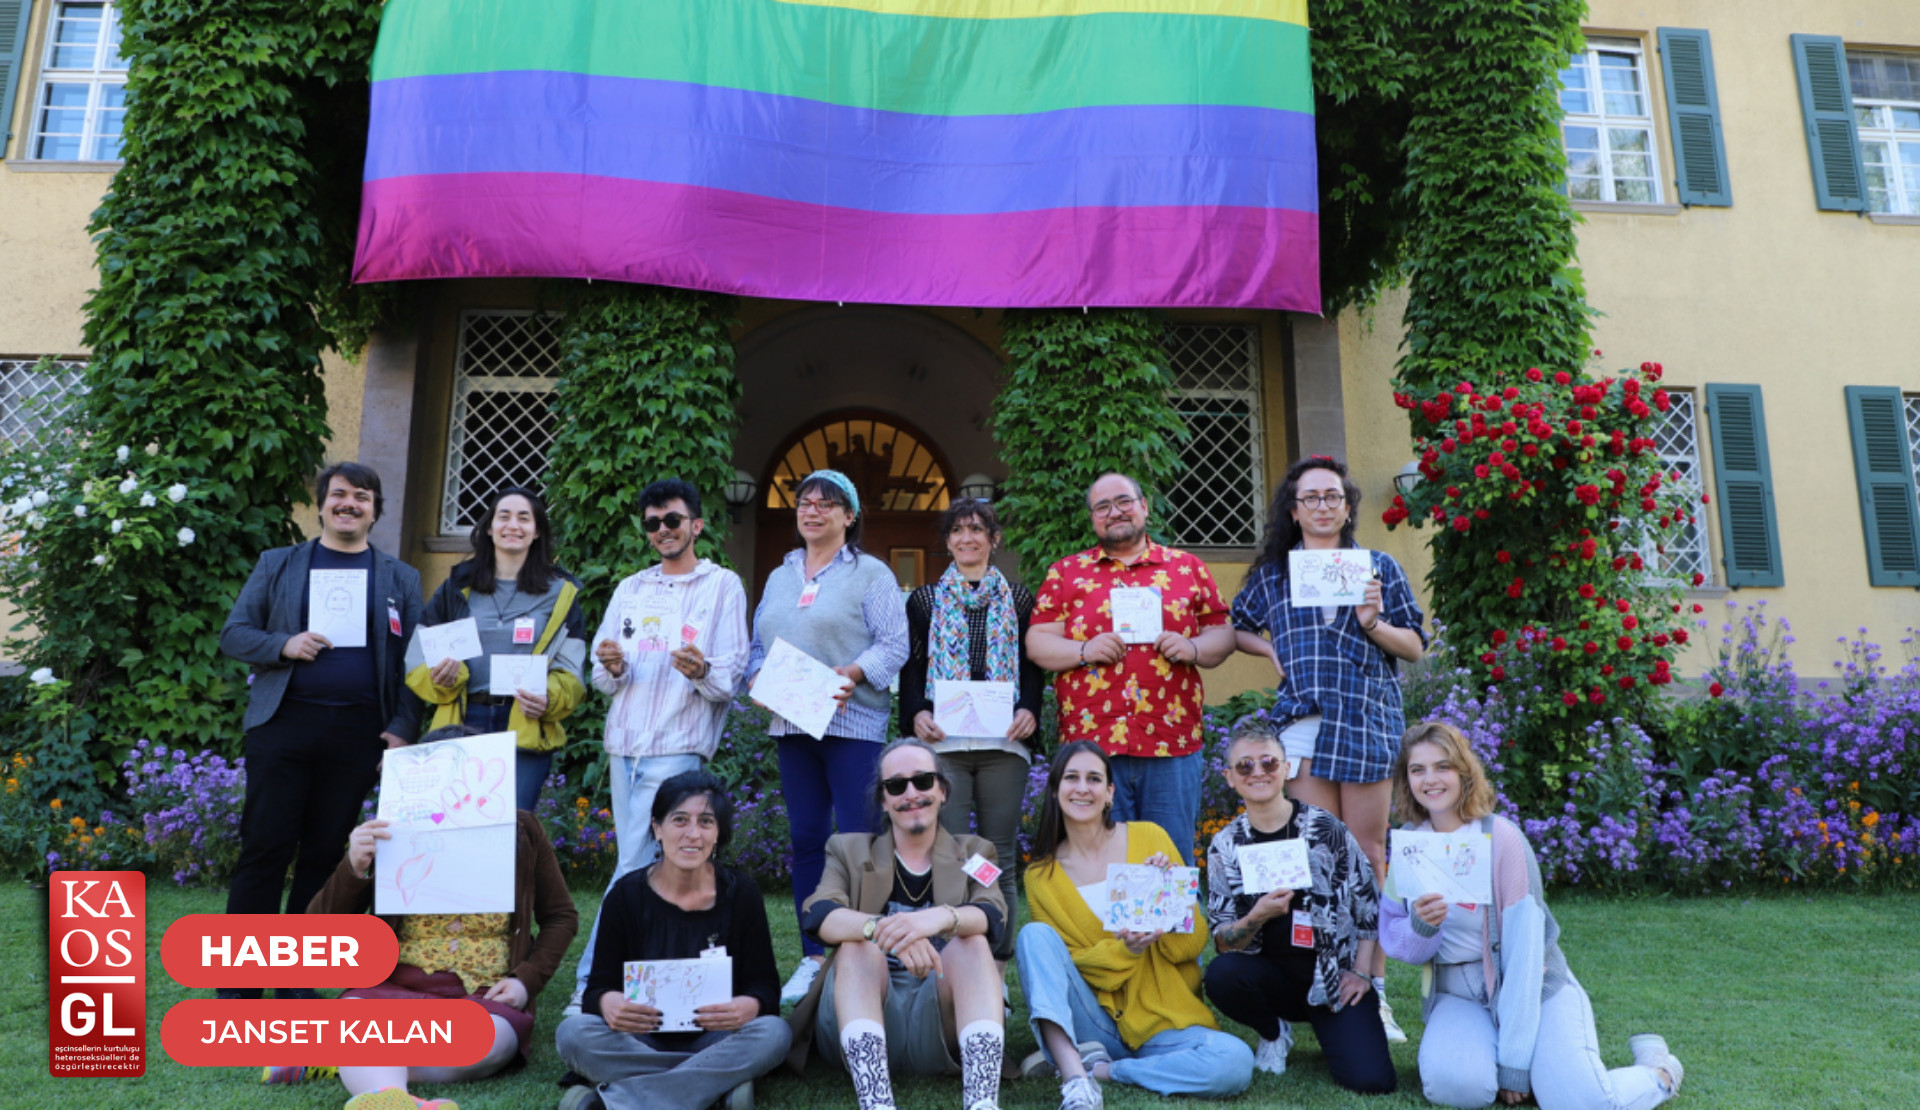 17 Mayıs Derneği’nin ismini de aldığı 17 Mayıs Uluslararası Homofobi, Bifobi, İnterfobi ve Transfobi Karşıtlığı Günü, Ankara’da bu yıl da çeşitli etkinliklerle kutlandı | Kaos GL - LGBTİ+ Haber Portalı